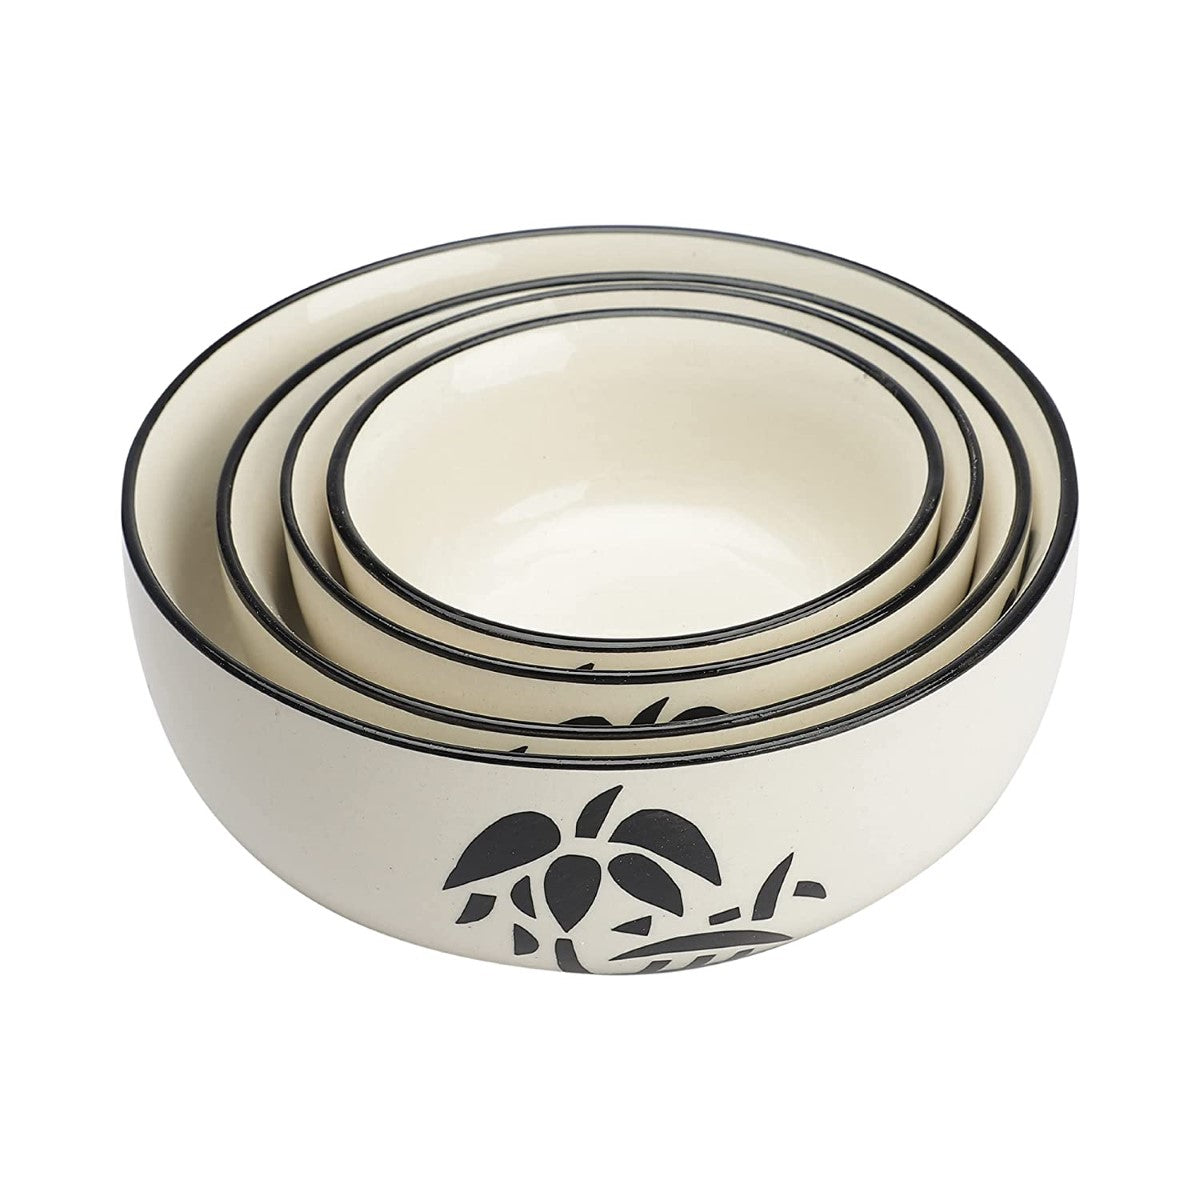 Cream & Black Ceramic Mixing Bowls (Set of 4)